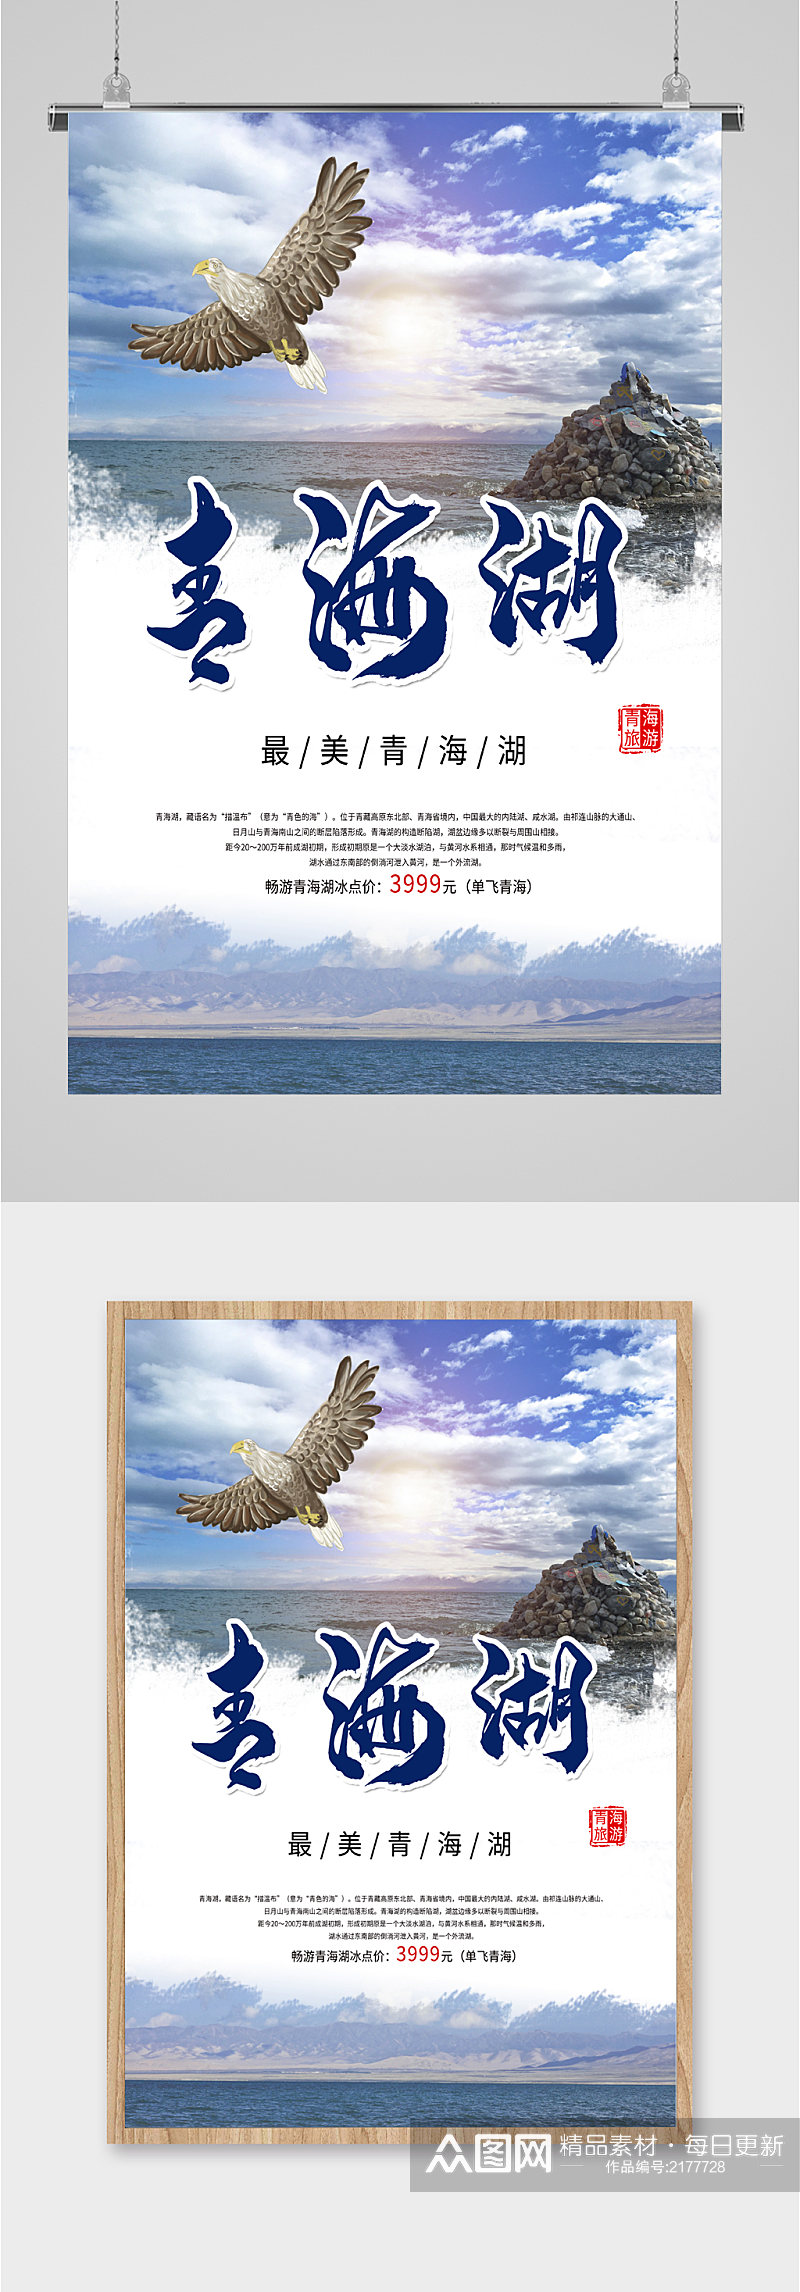 青海湖风景旅游海报素材